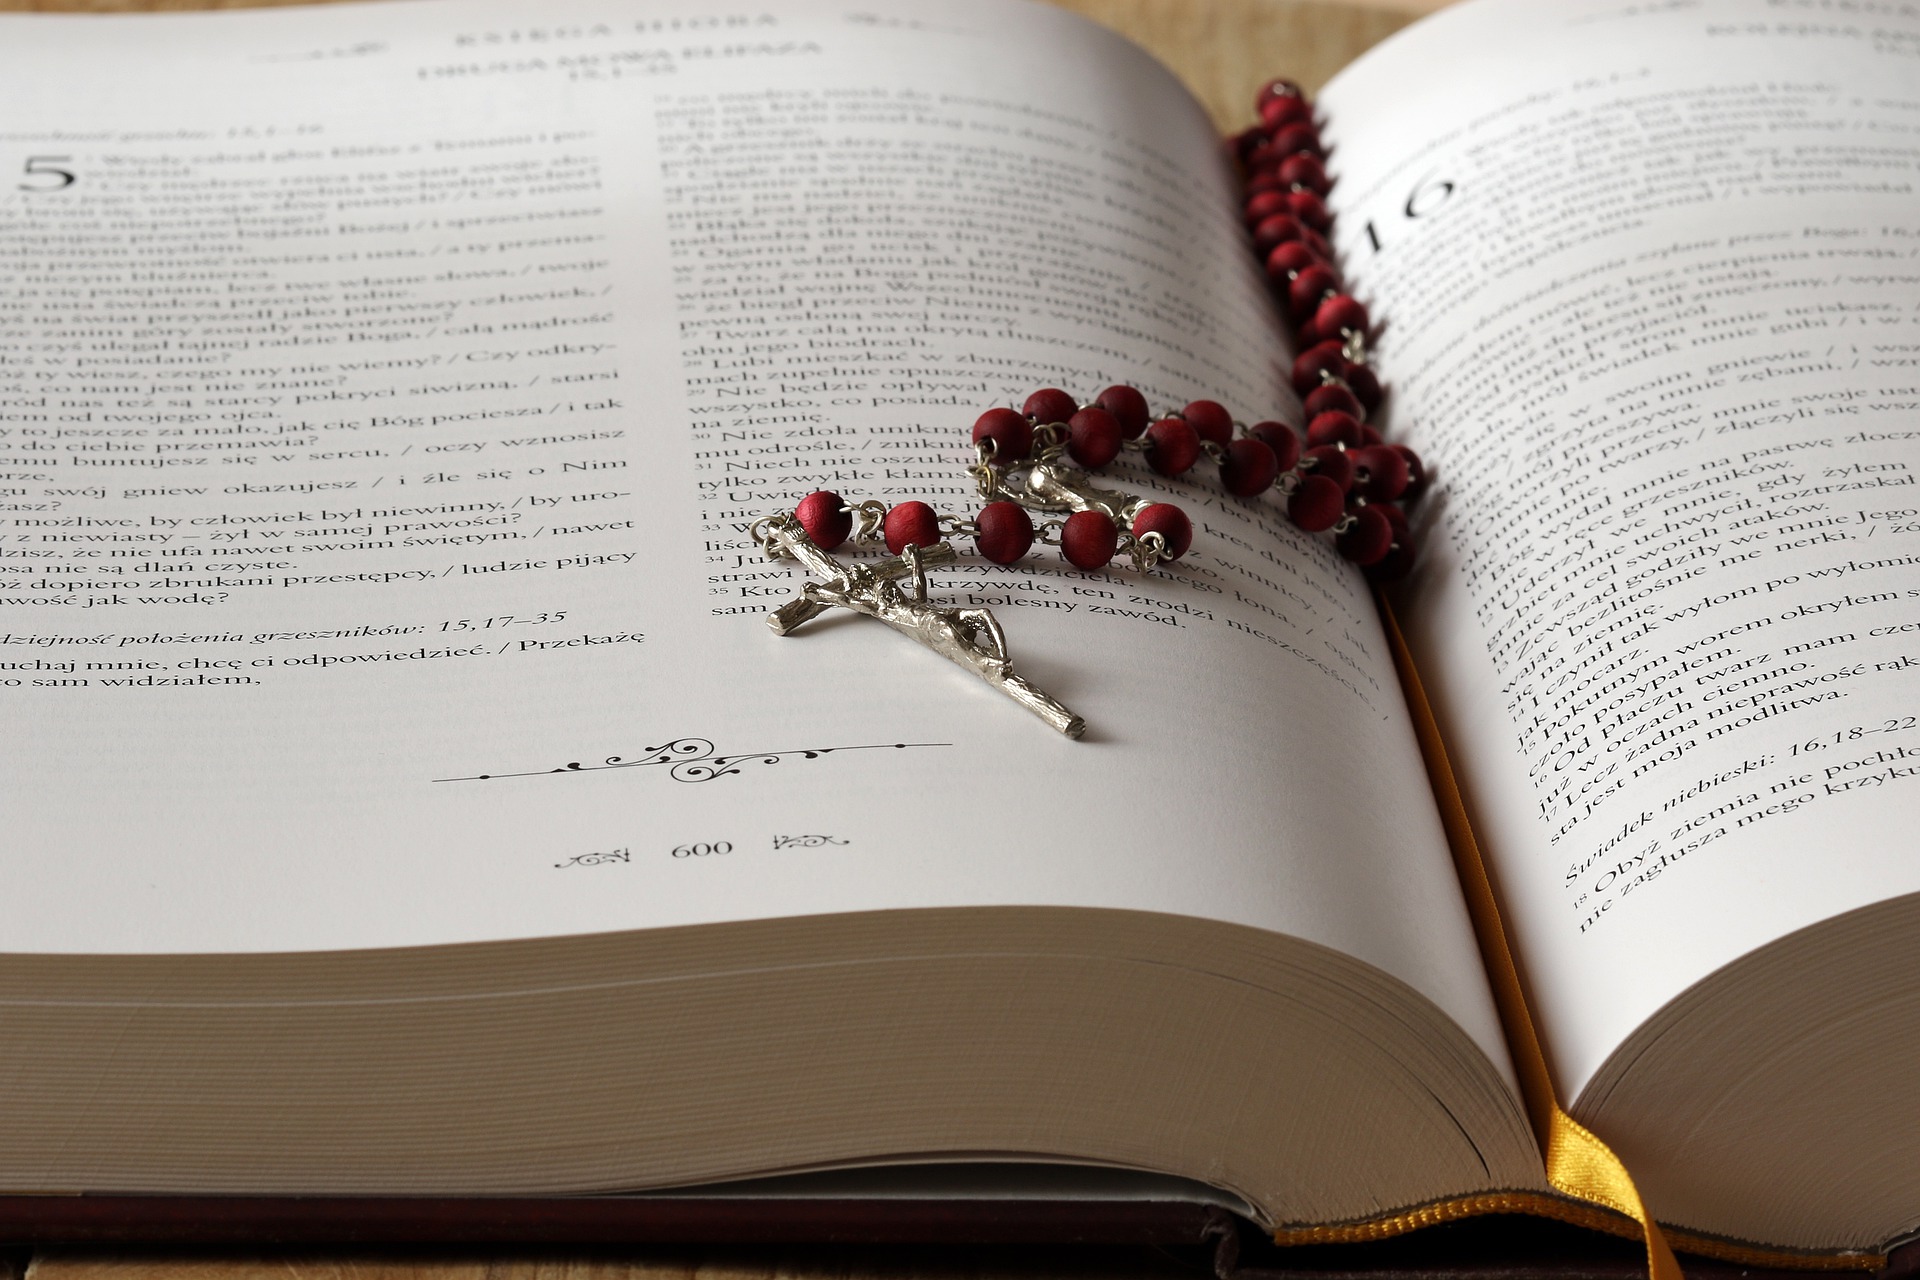 Bibel mit darauf liegendem Rosenkranz; Bildbeitrag zum Blogbeitrag zur katholischen Trauung